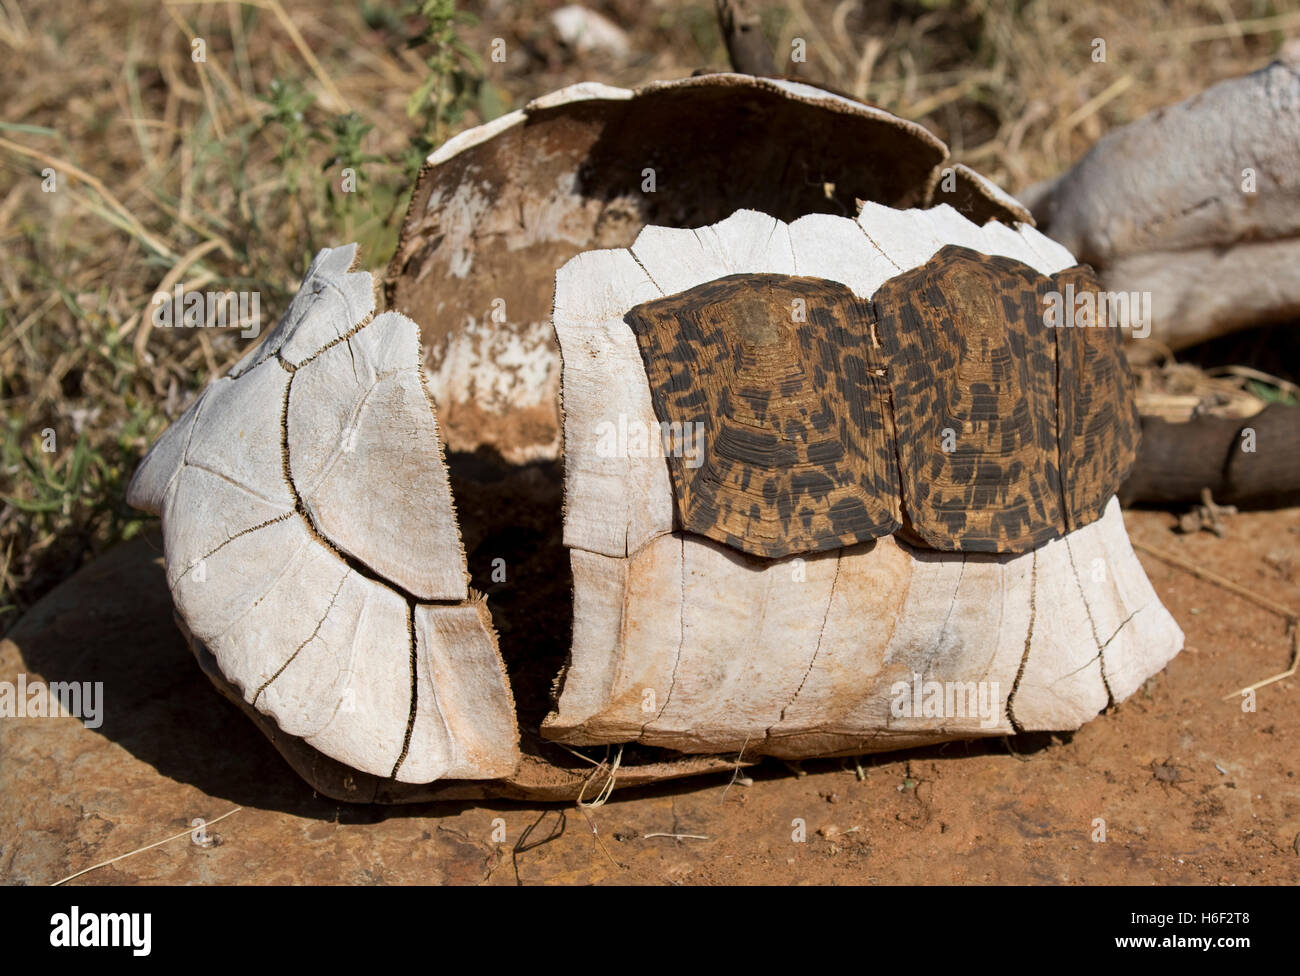 Caparazón de tortuga de caparazón óseo con algunas escamas de queratina Laikipa restantes Kenya Foto de stock